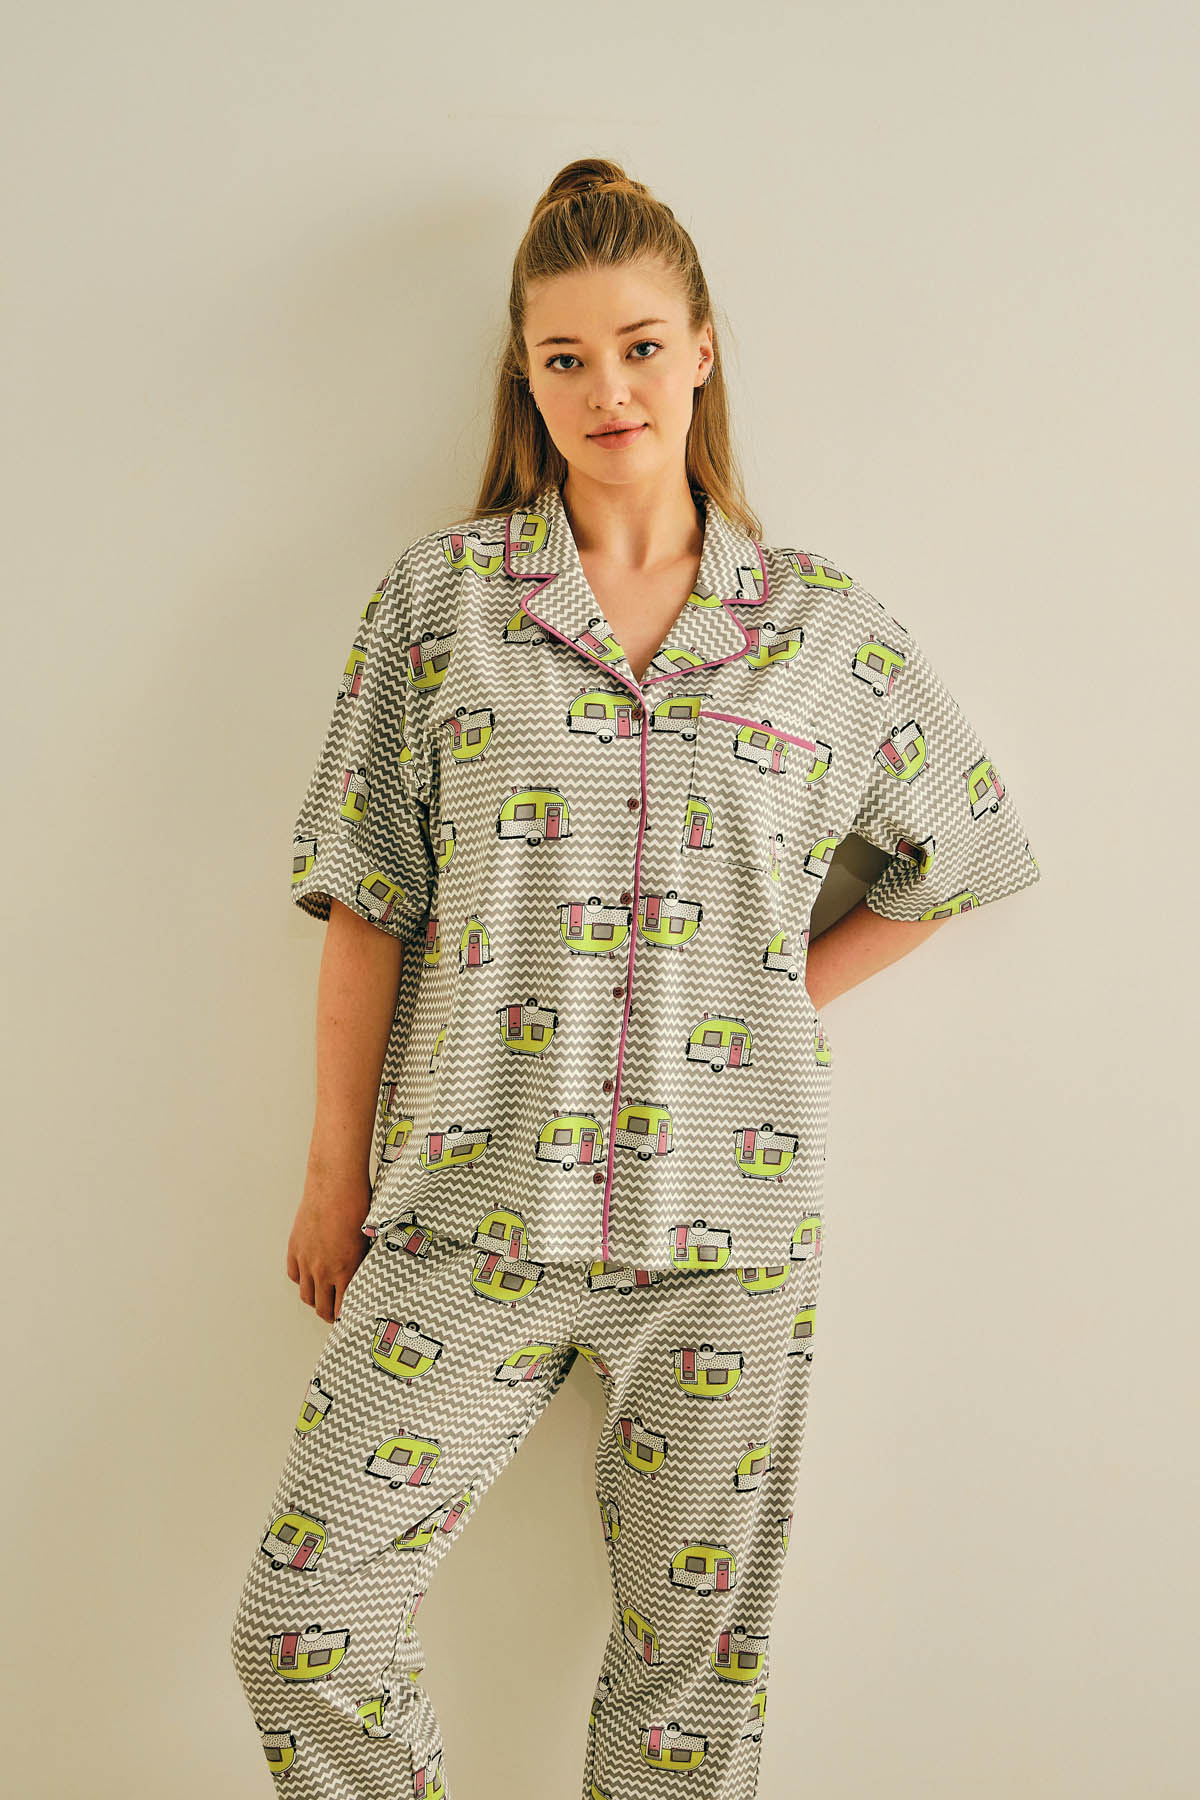 Kadın Büyük Beden Gömlekli Uzun Pijama Takımı